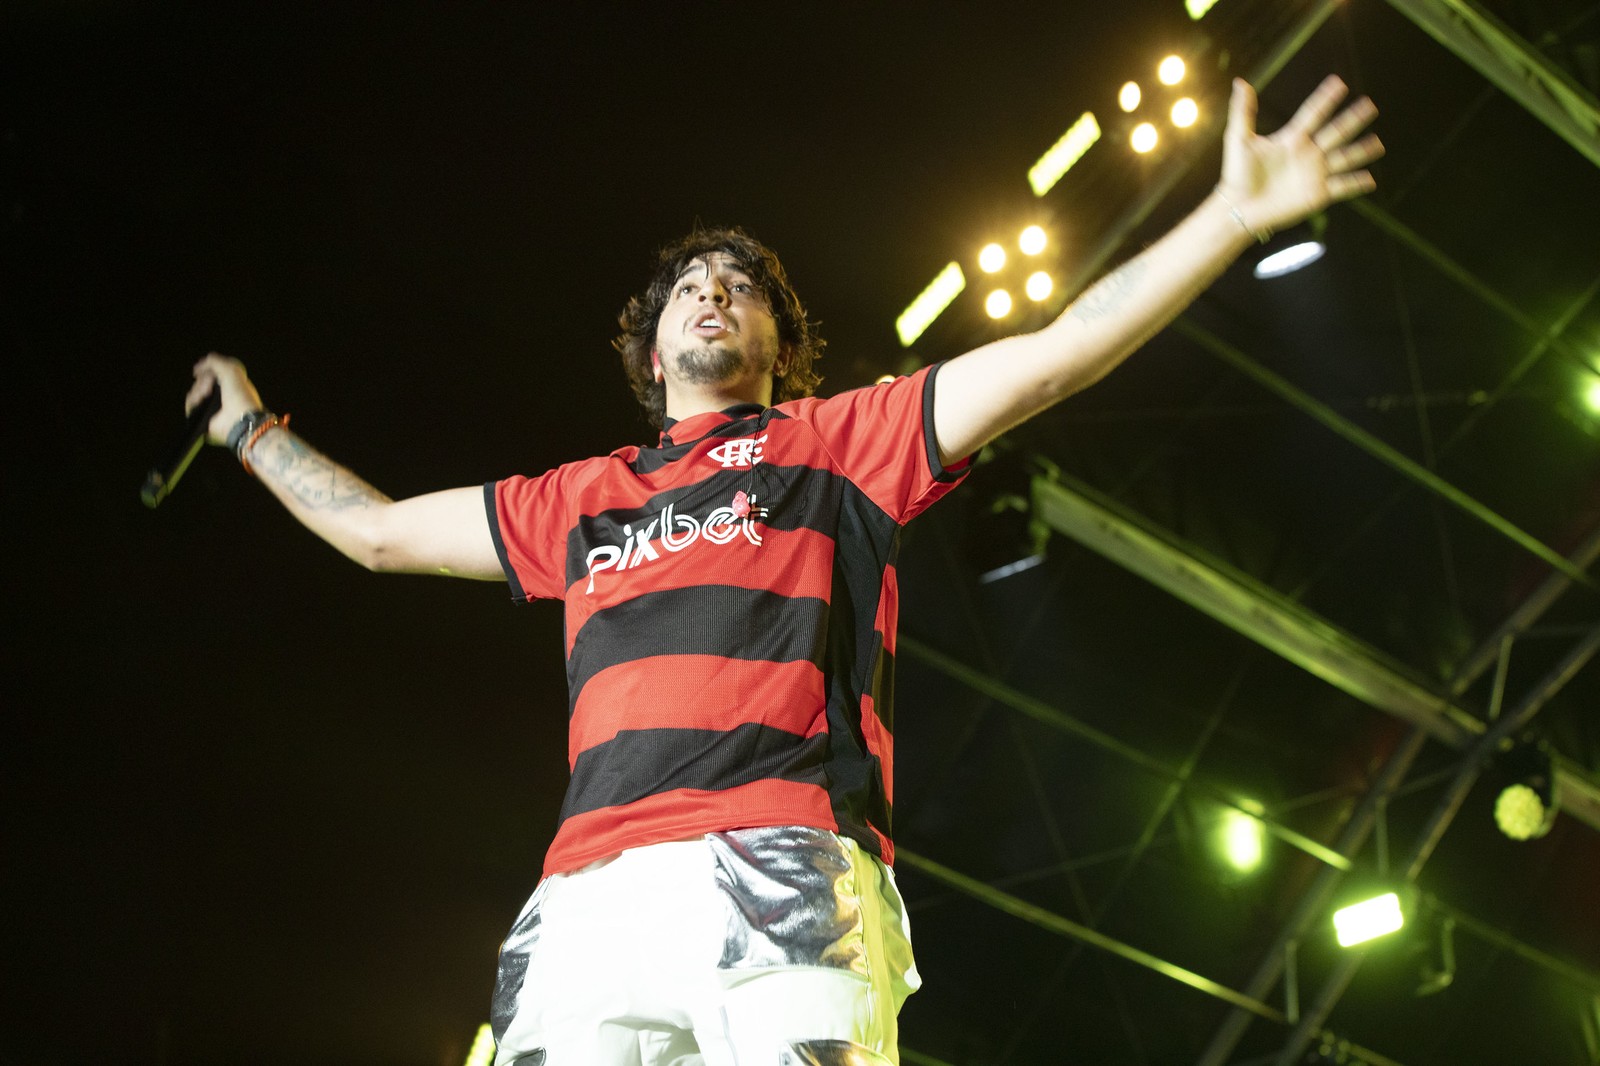 Nattan cantou no palco de Copacabana no réveillon com a camisa do Flamengo - Alexandre Macieira / Riotur